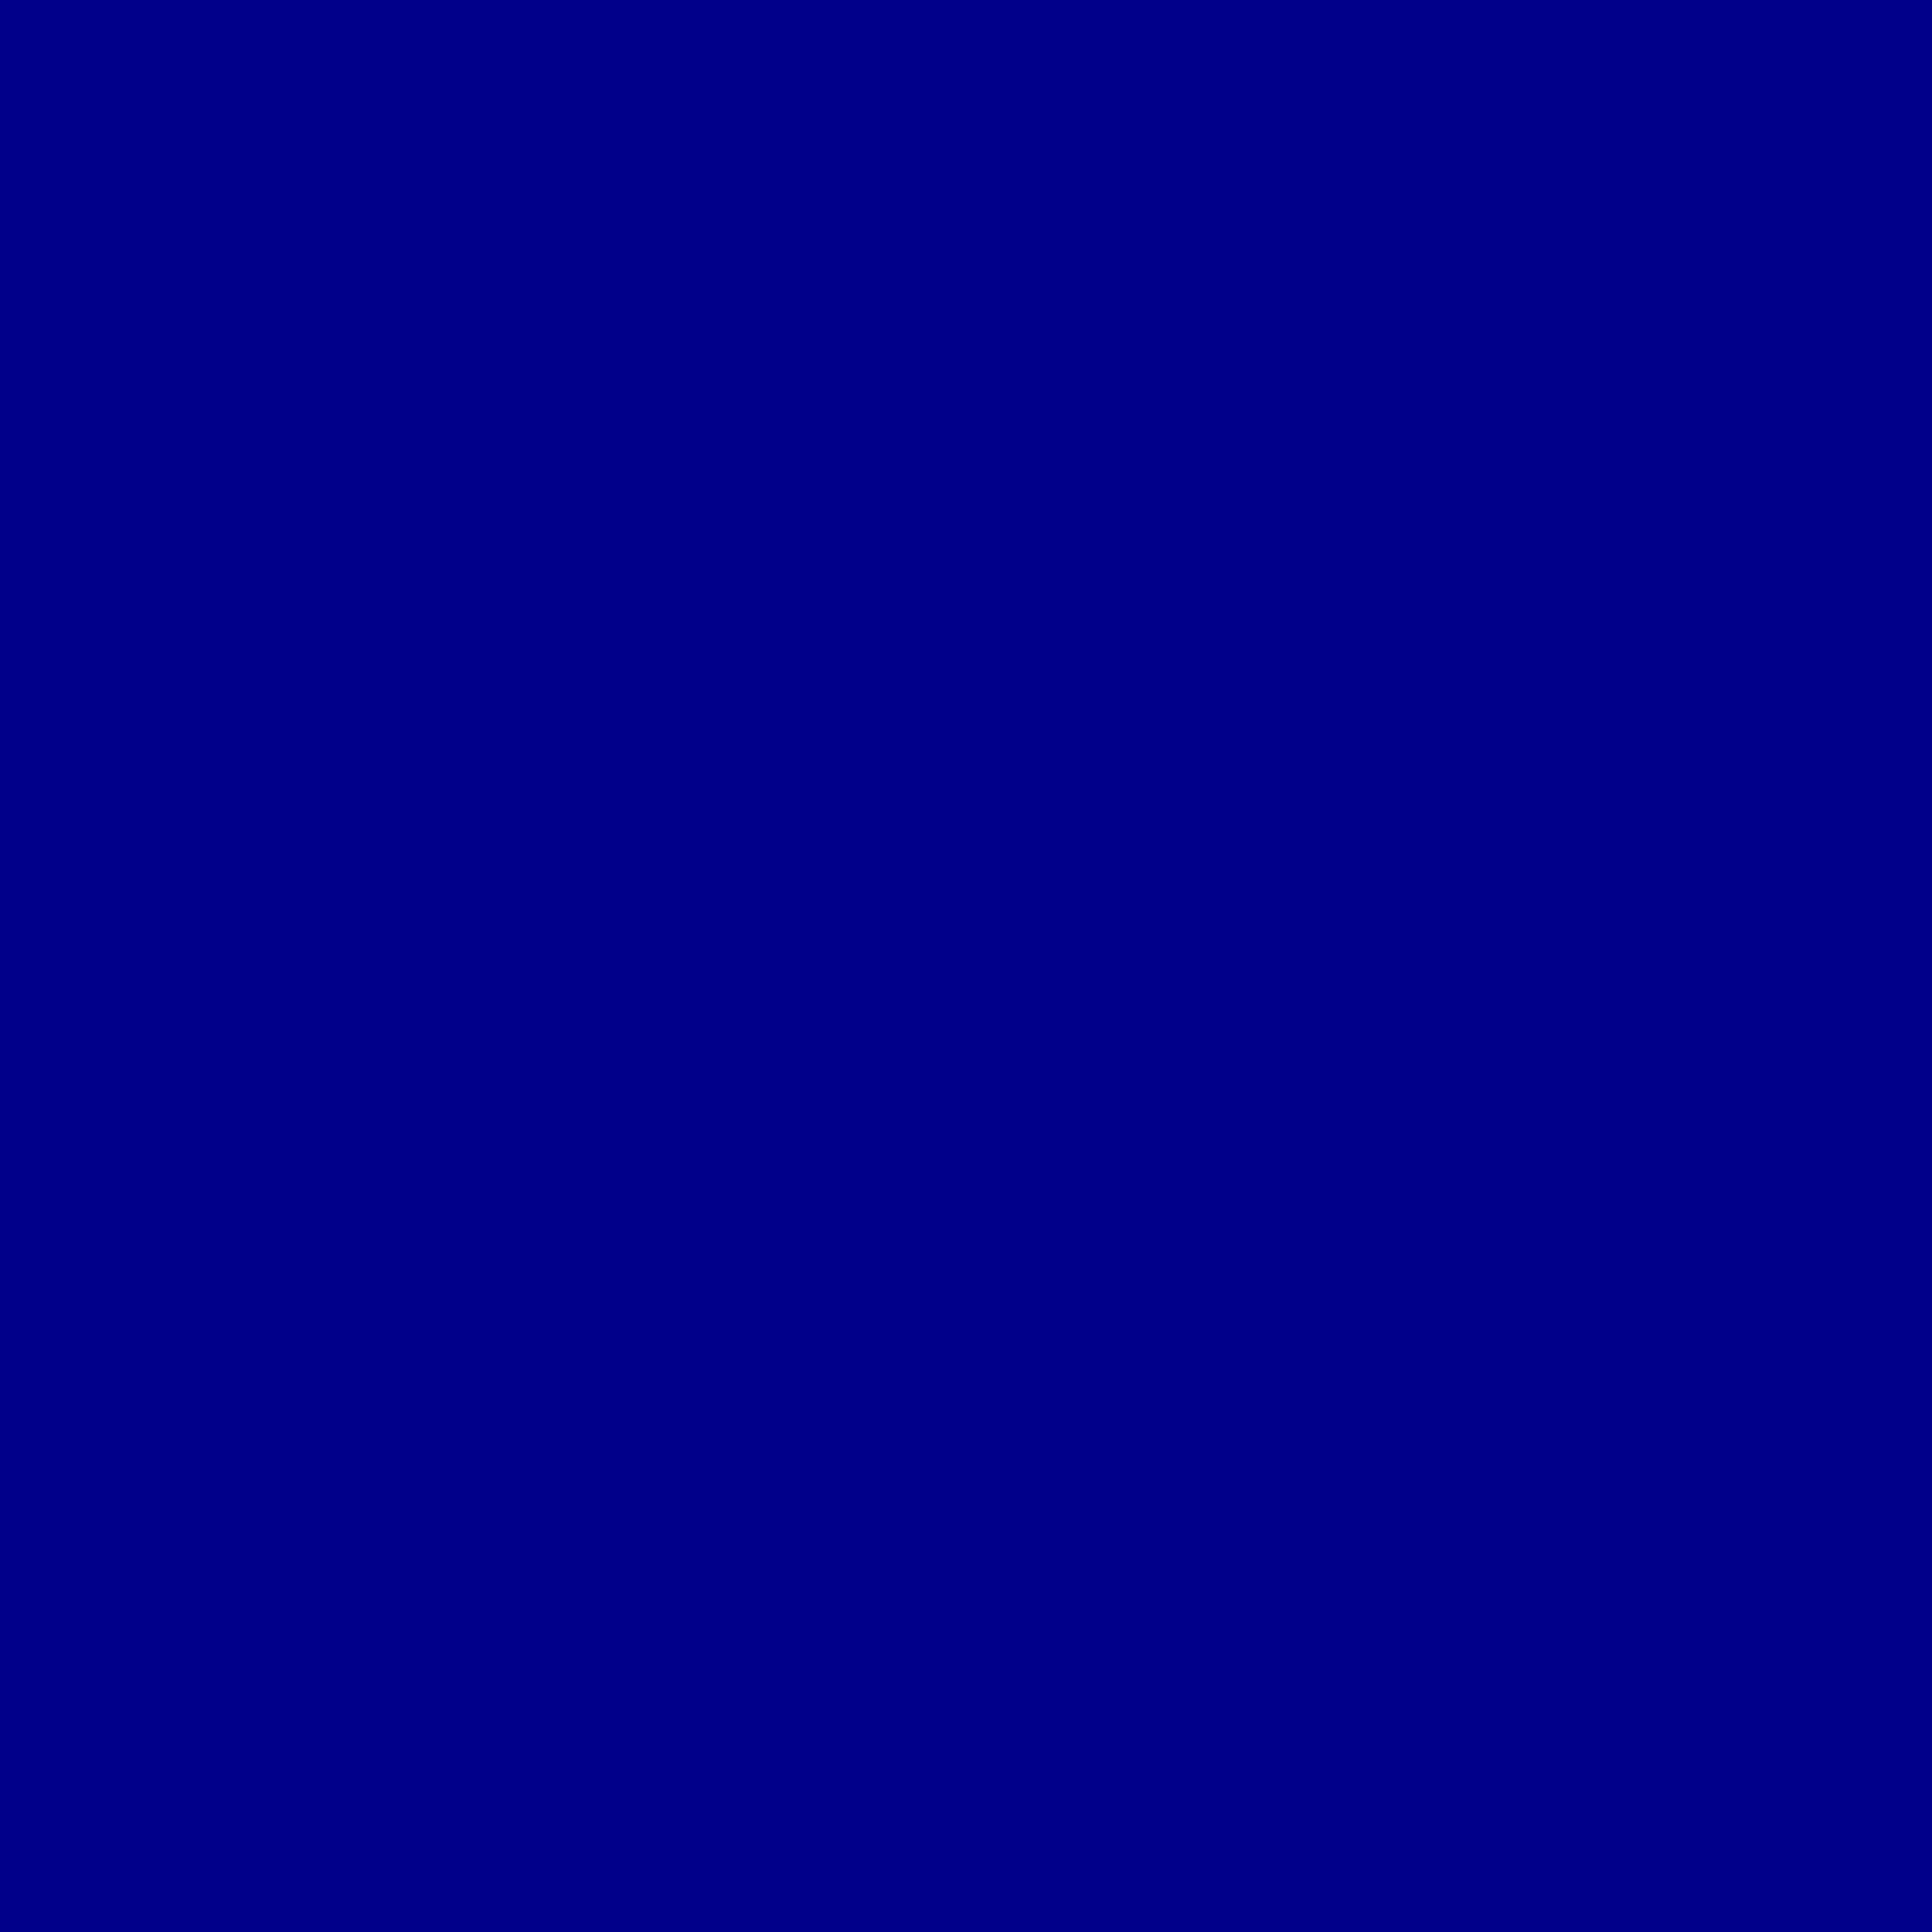 Solid Dark Blue Wallpaper Free Solid Dark Blue Background